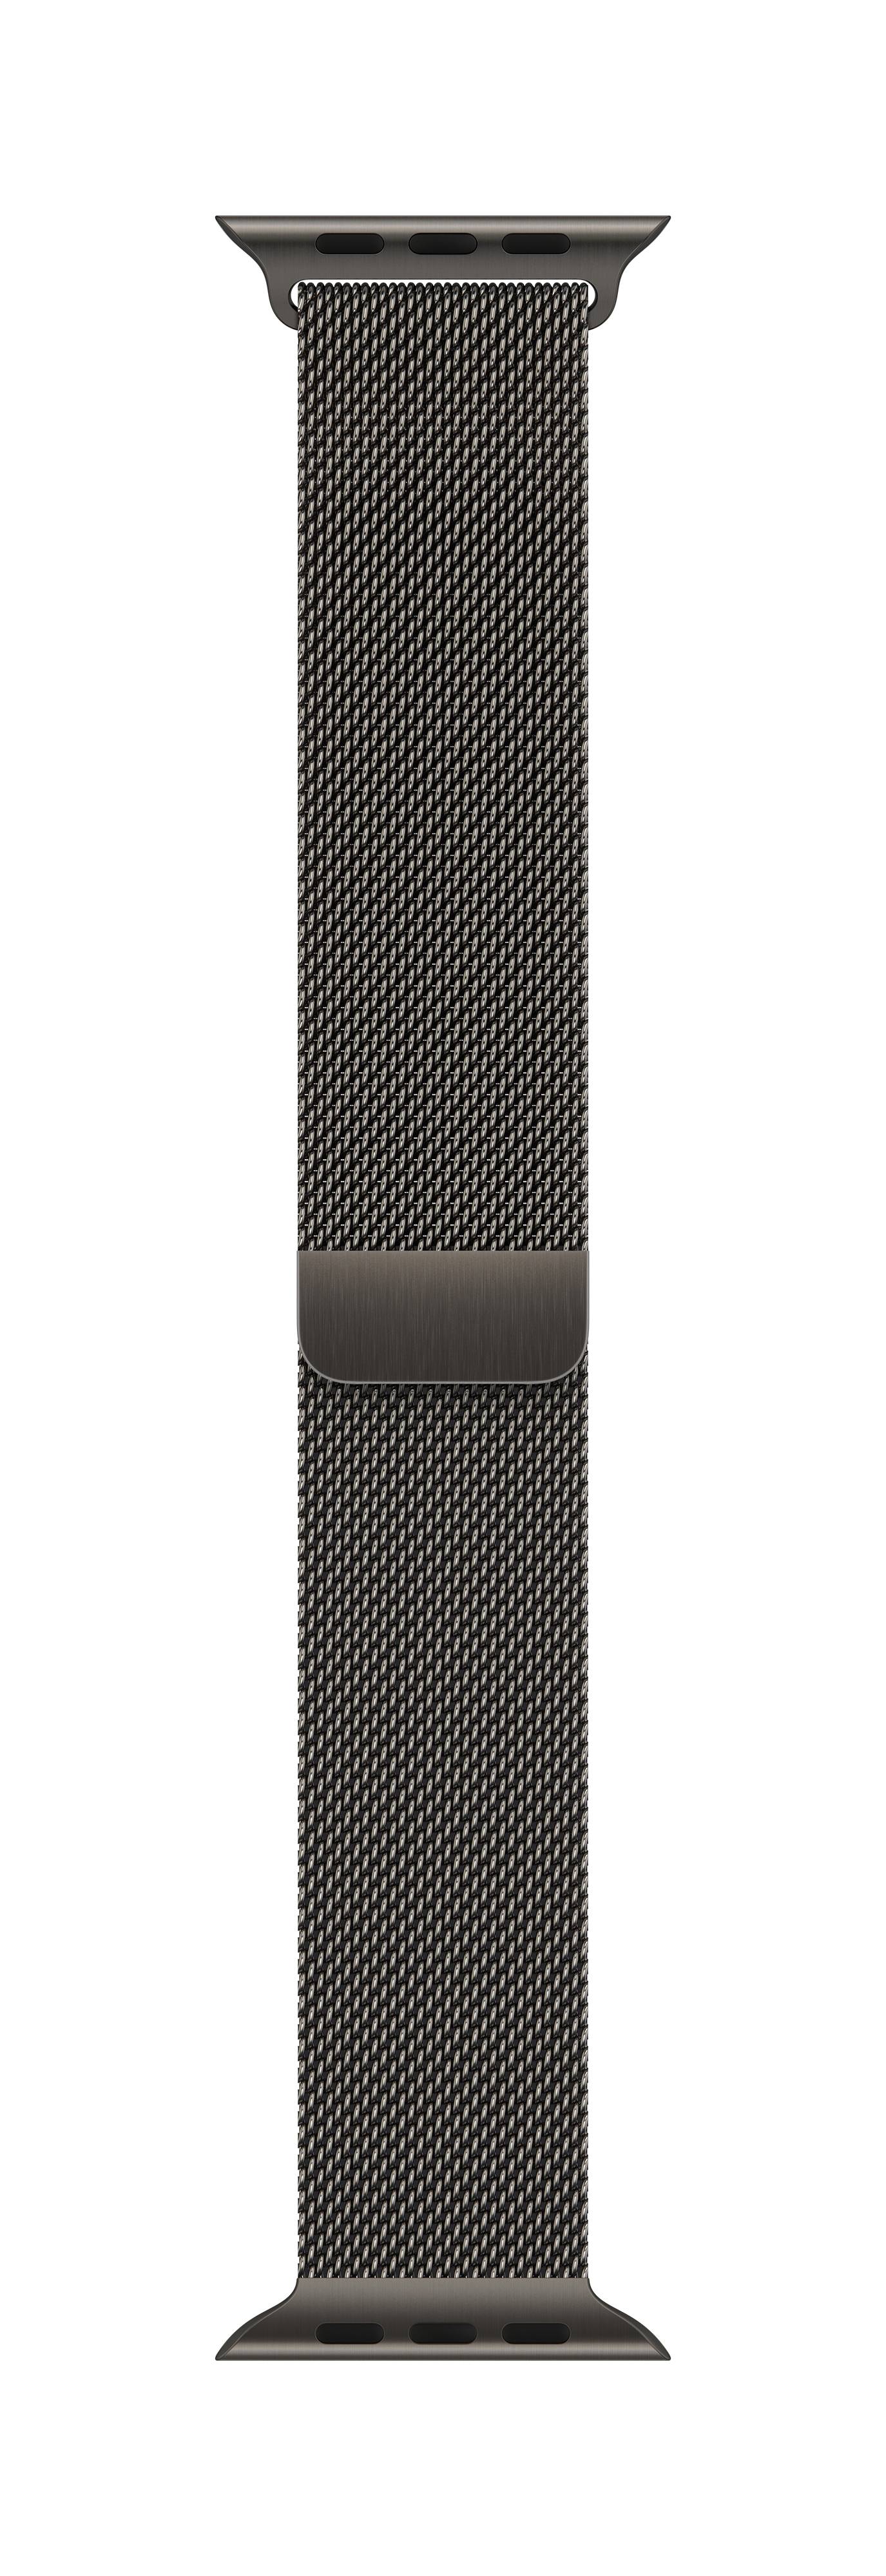 APPLE Milanaise Armband für Watch 41mm (graphit)